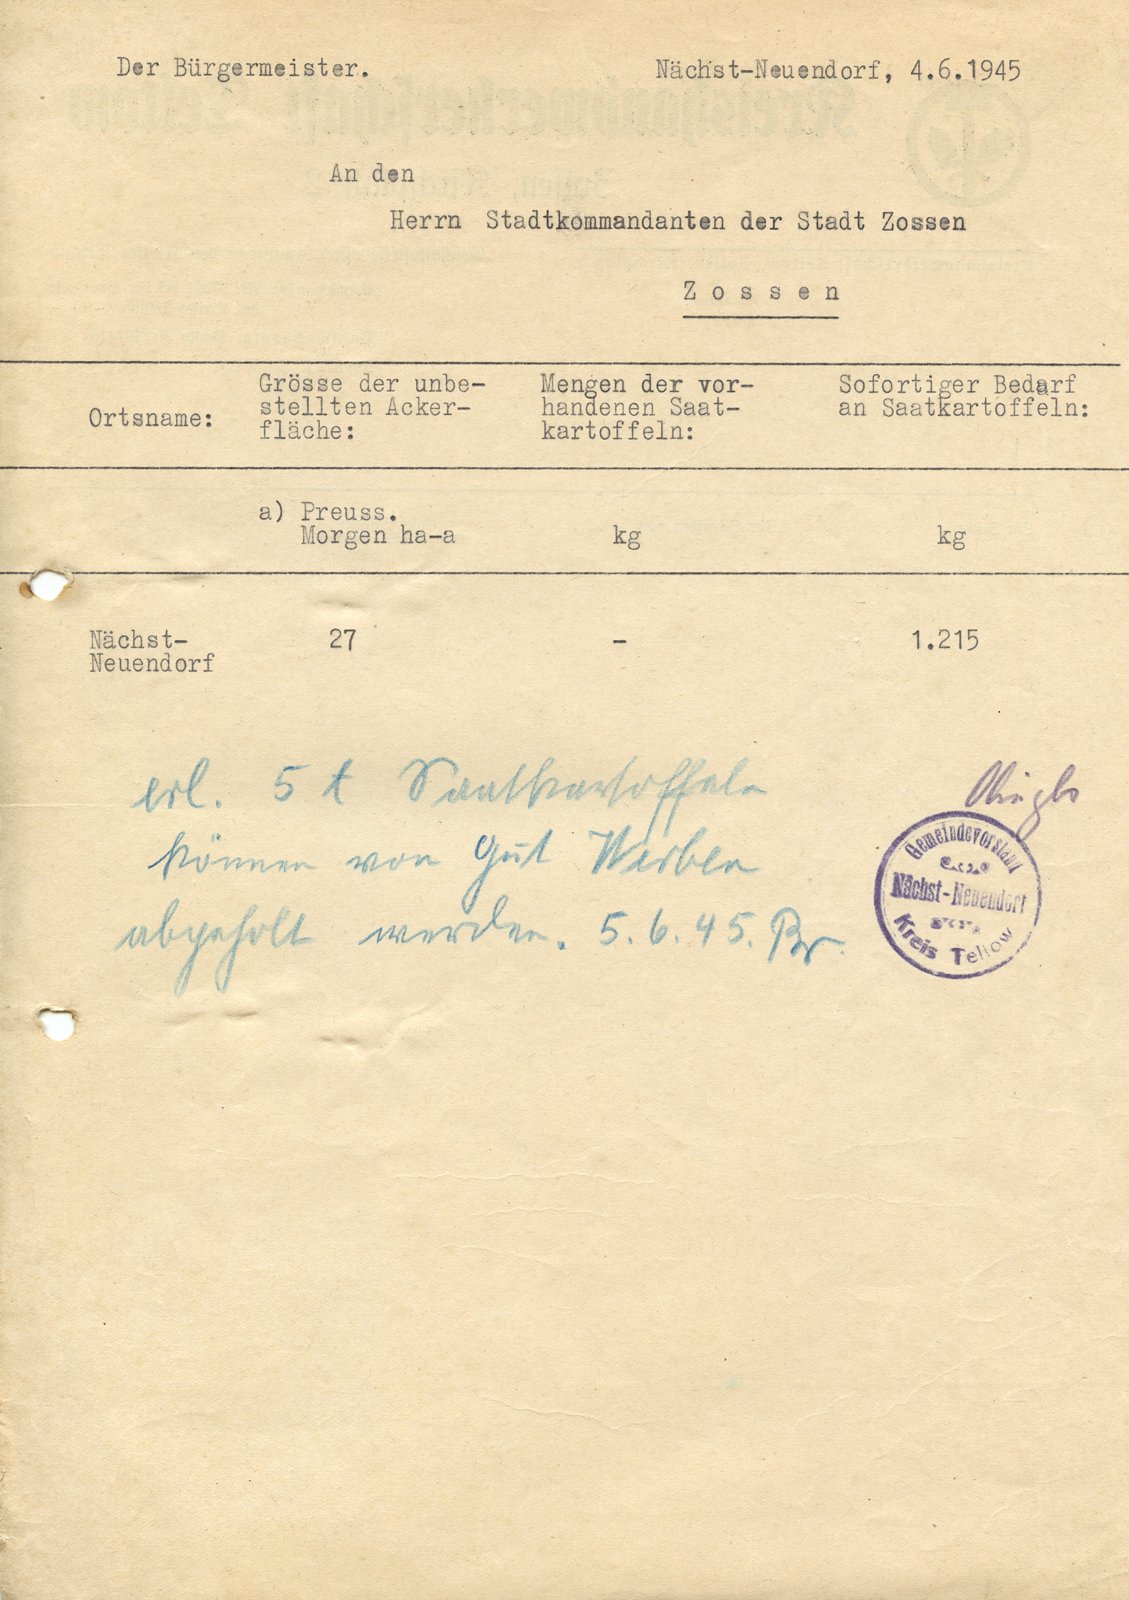 BM-Stadtkommandant, 04.06.1945 (Heimatverein "Alter Krug" Zossen e.V. CC BY-NC-SA)